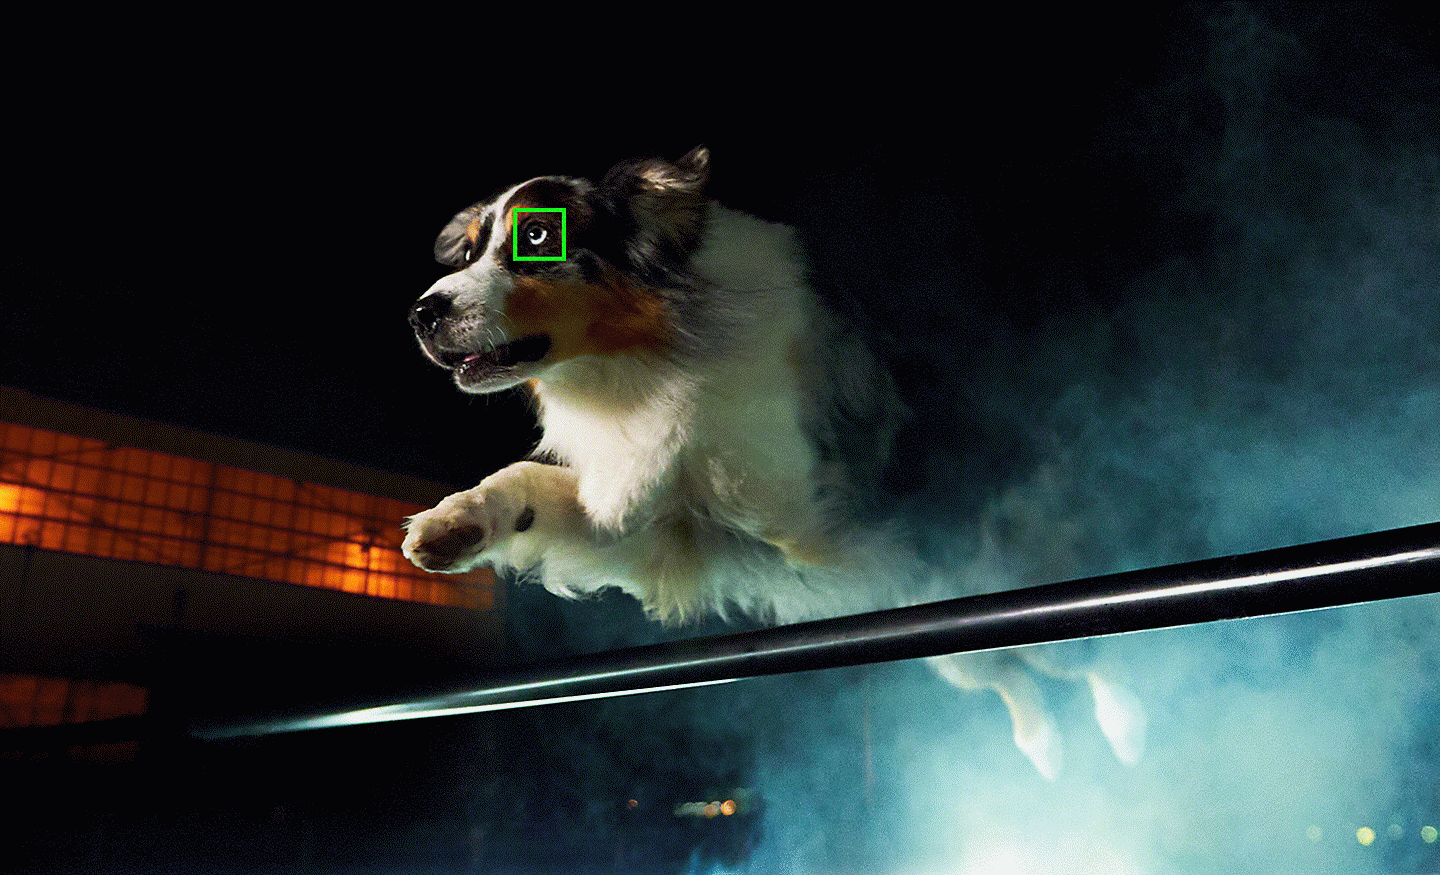 Fotografie în lumină scăzută cu un câine care sare, cu un punct FA verde deasupra ochiului